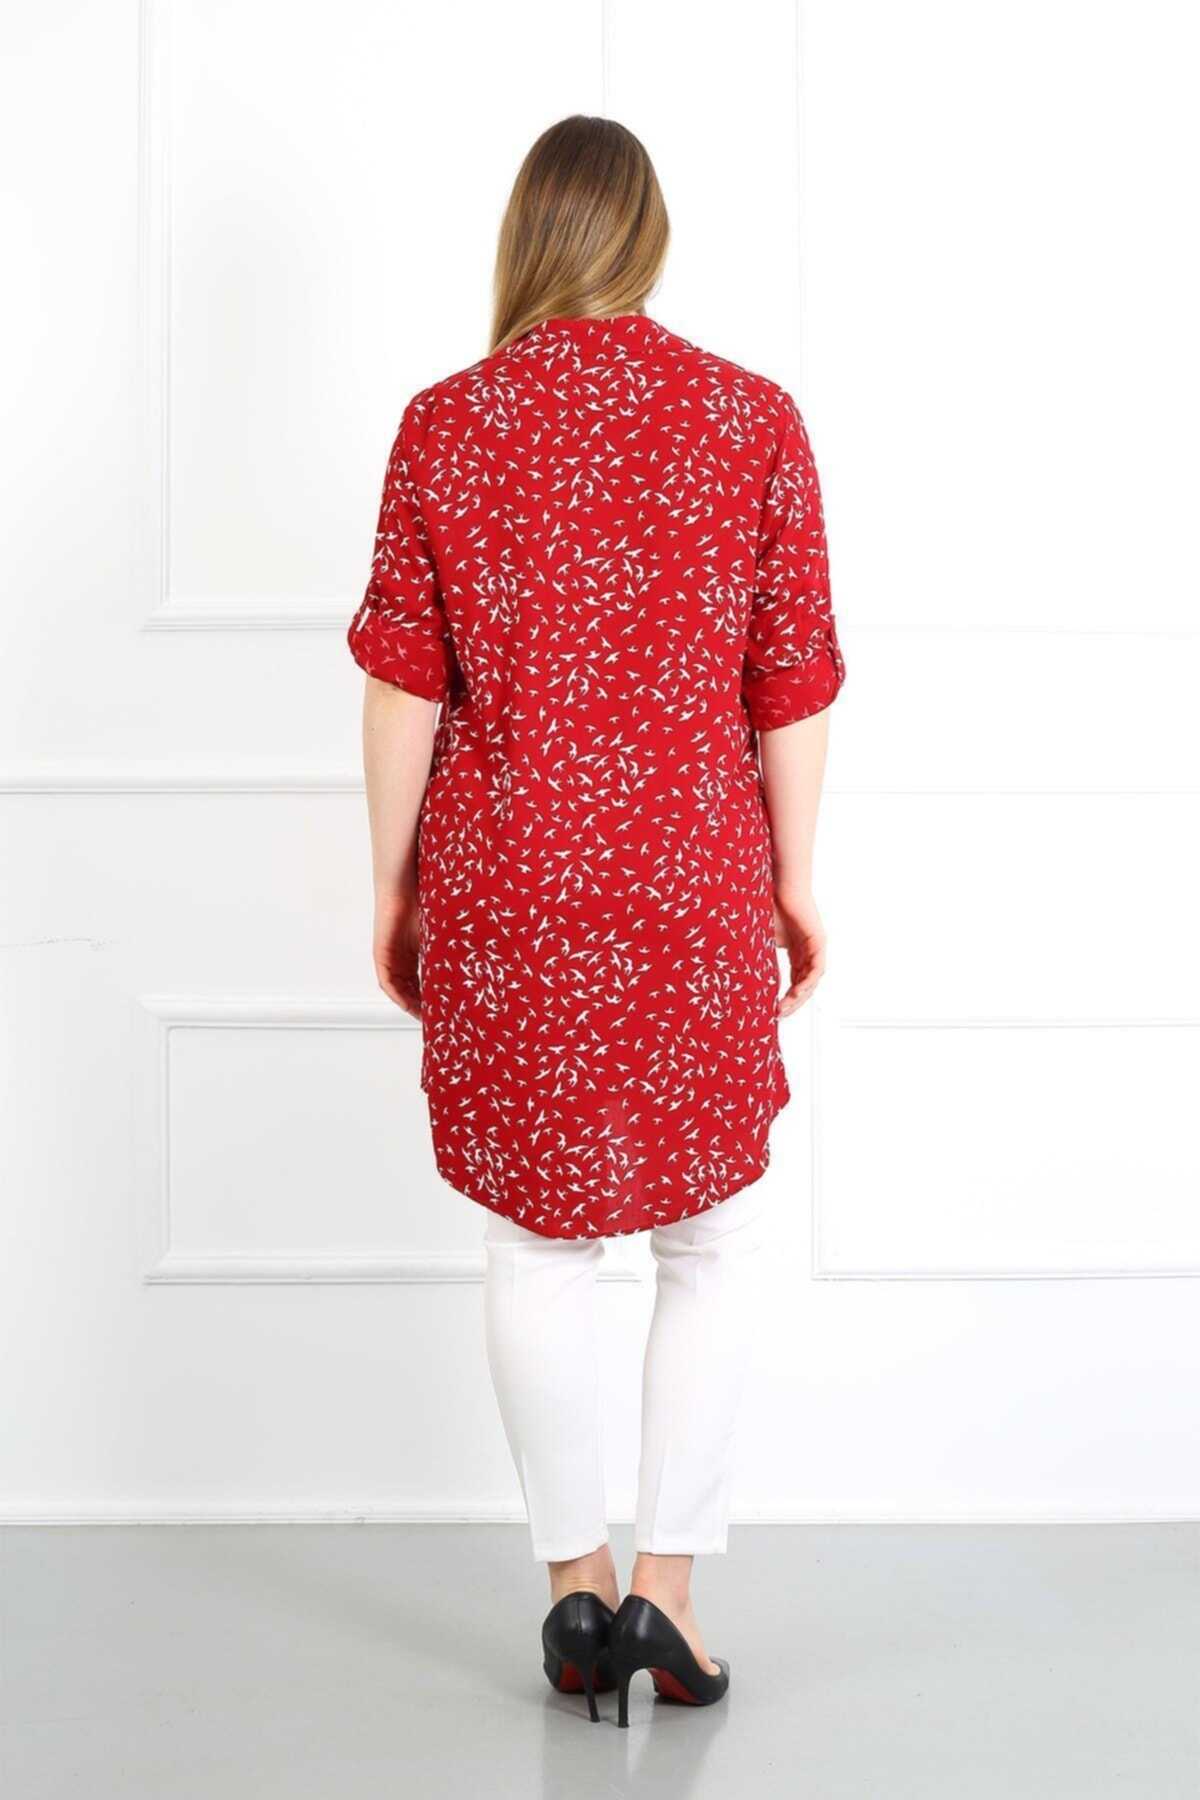 تونیک سایز بزرگ آستین تاشو طرح دار زنانه قرمز برند By Alba Collection